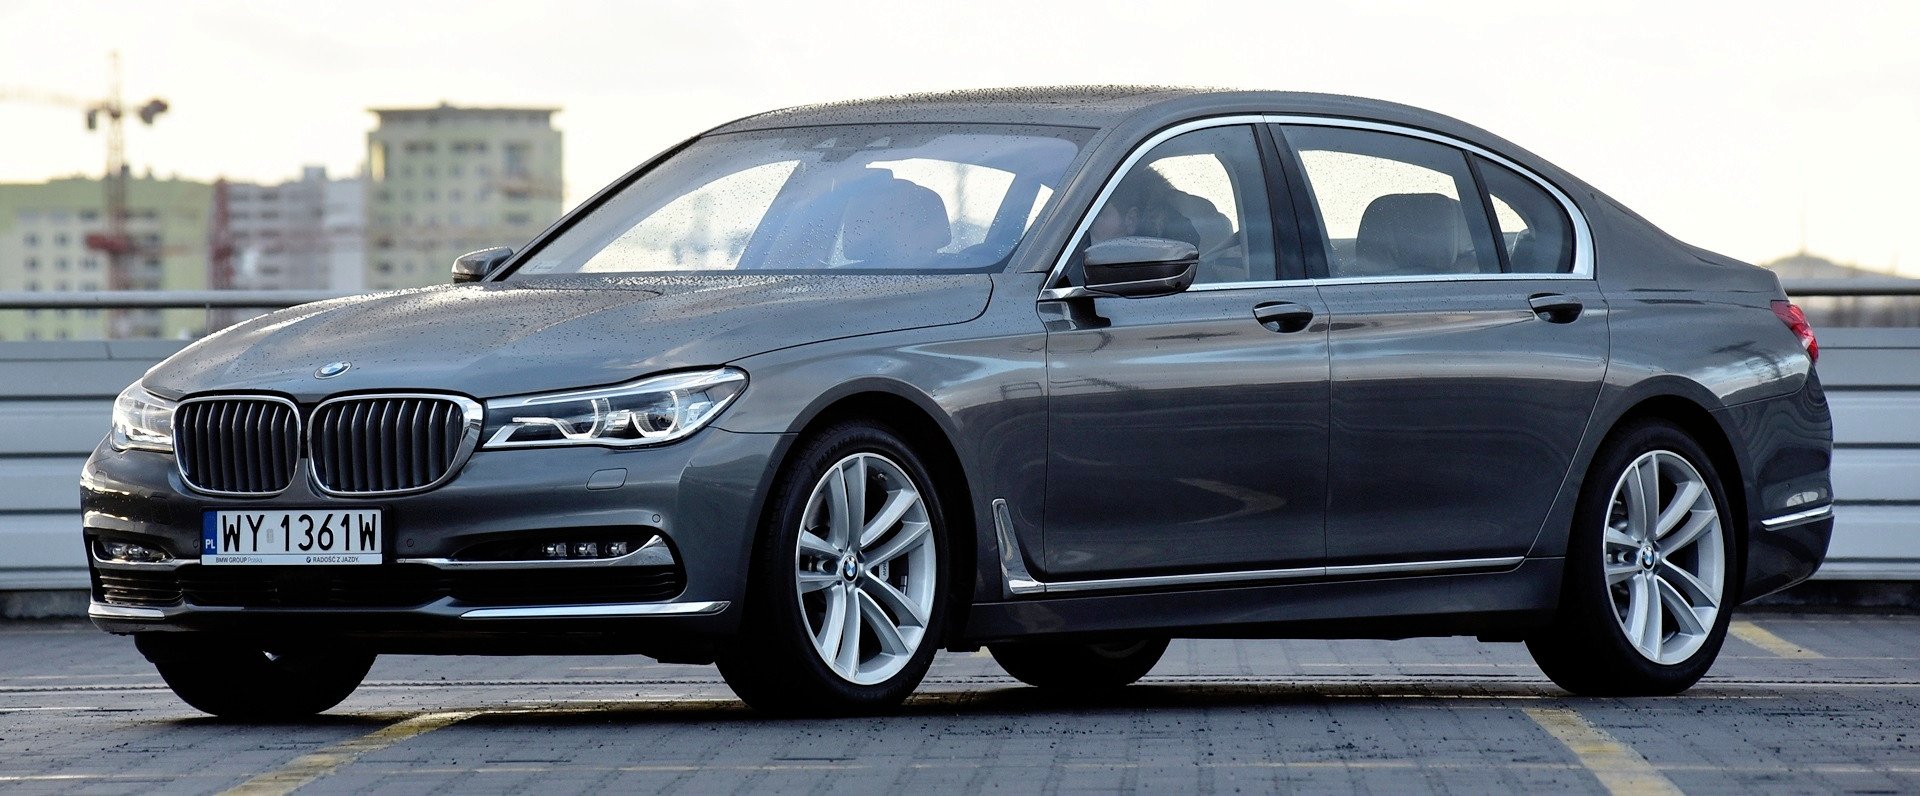 BMW serii 7 dane techniczne